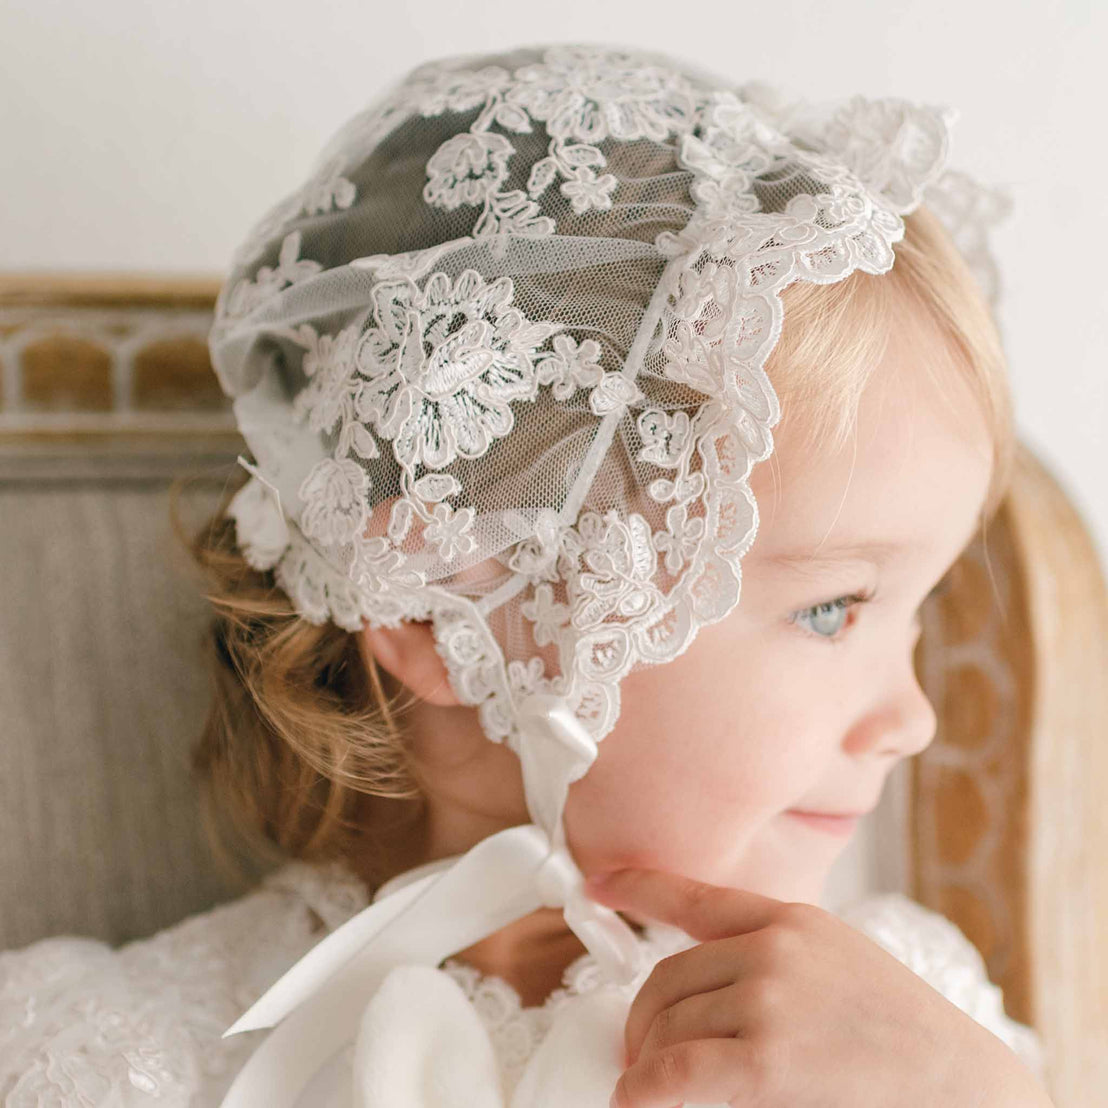 Baby girl in profile wearing lace bonnet.